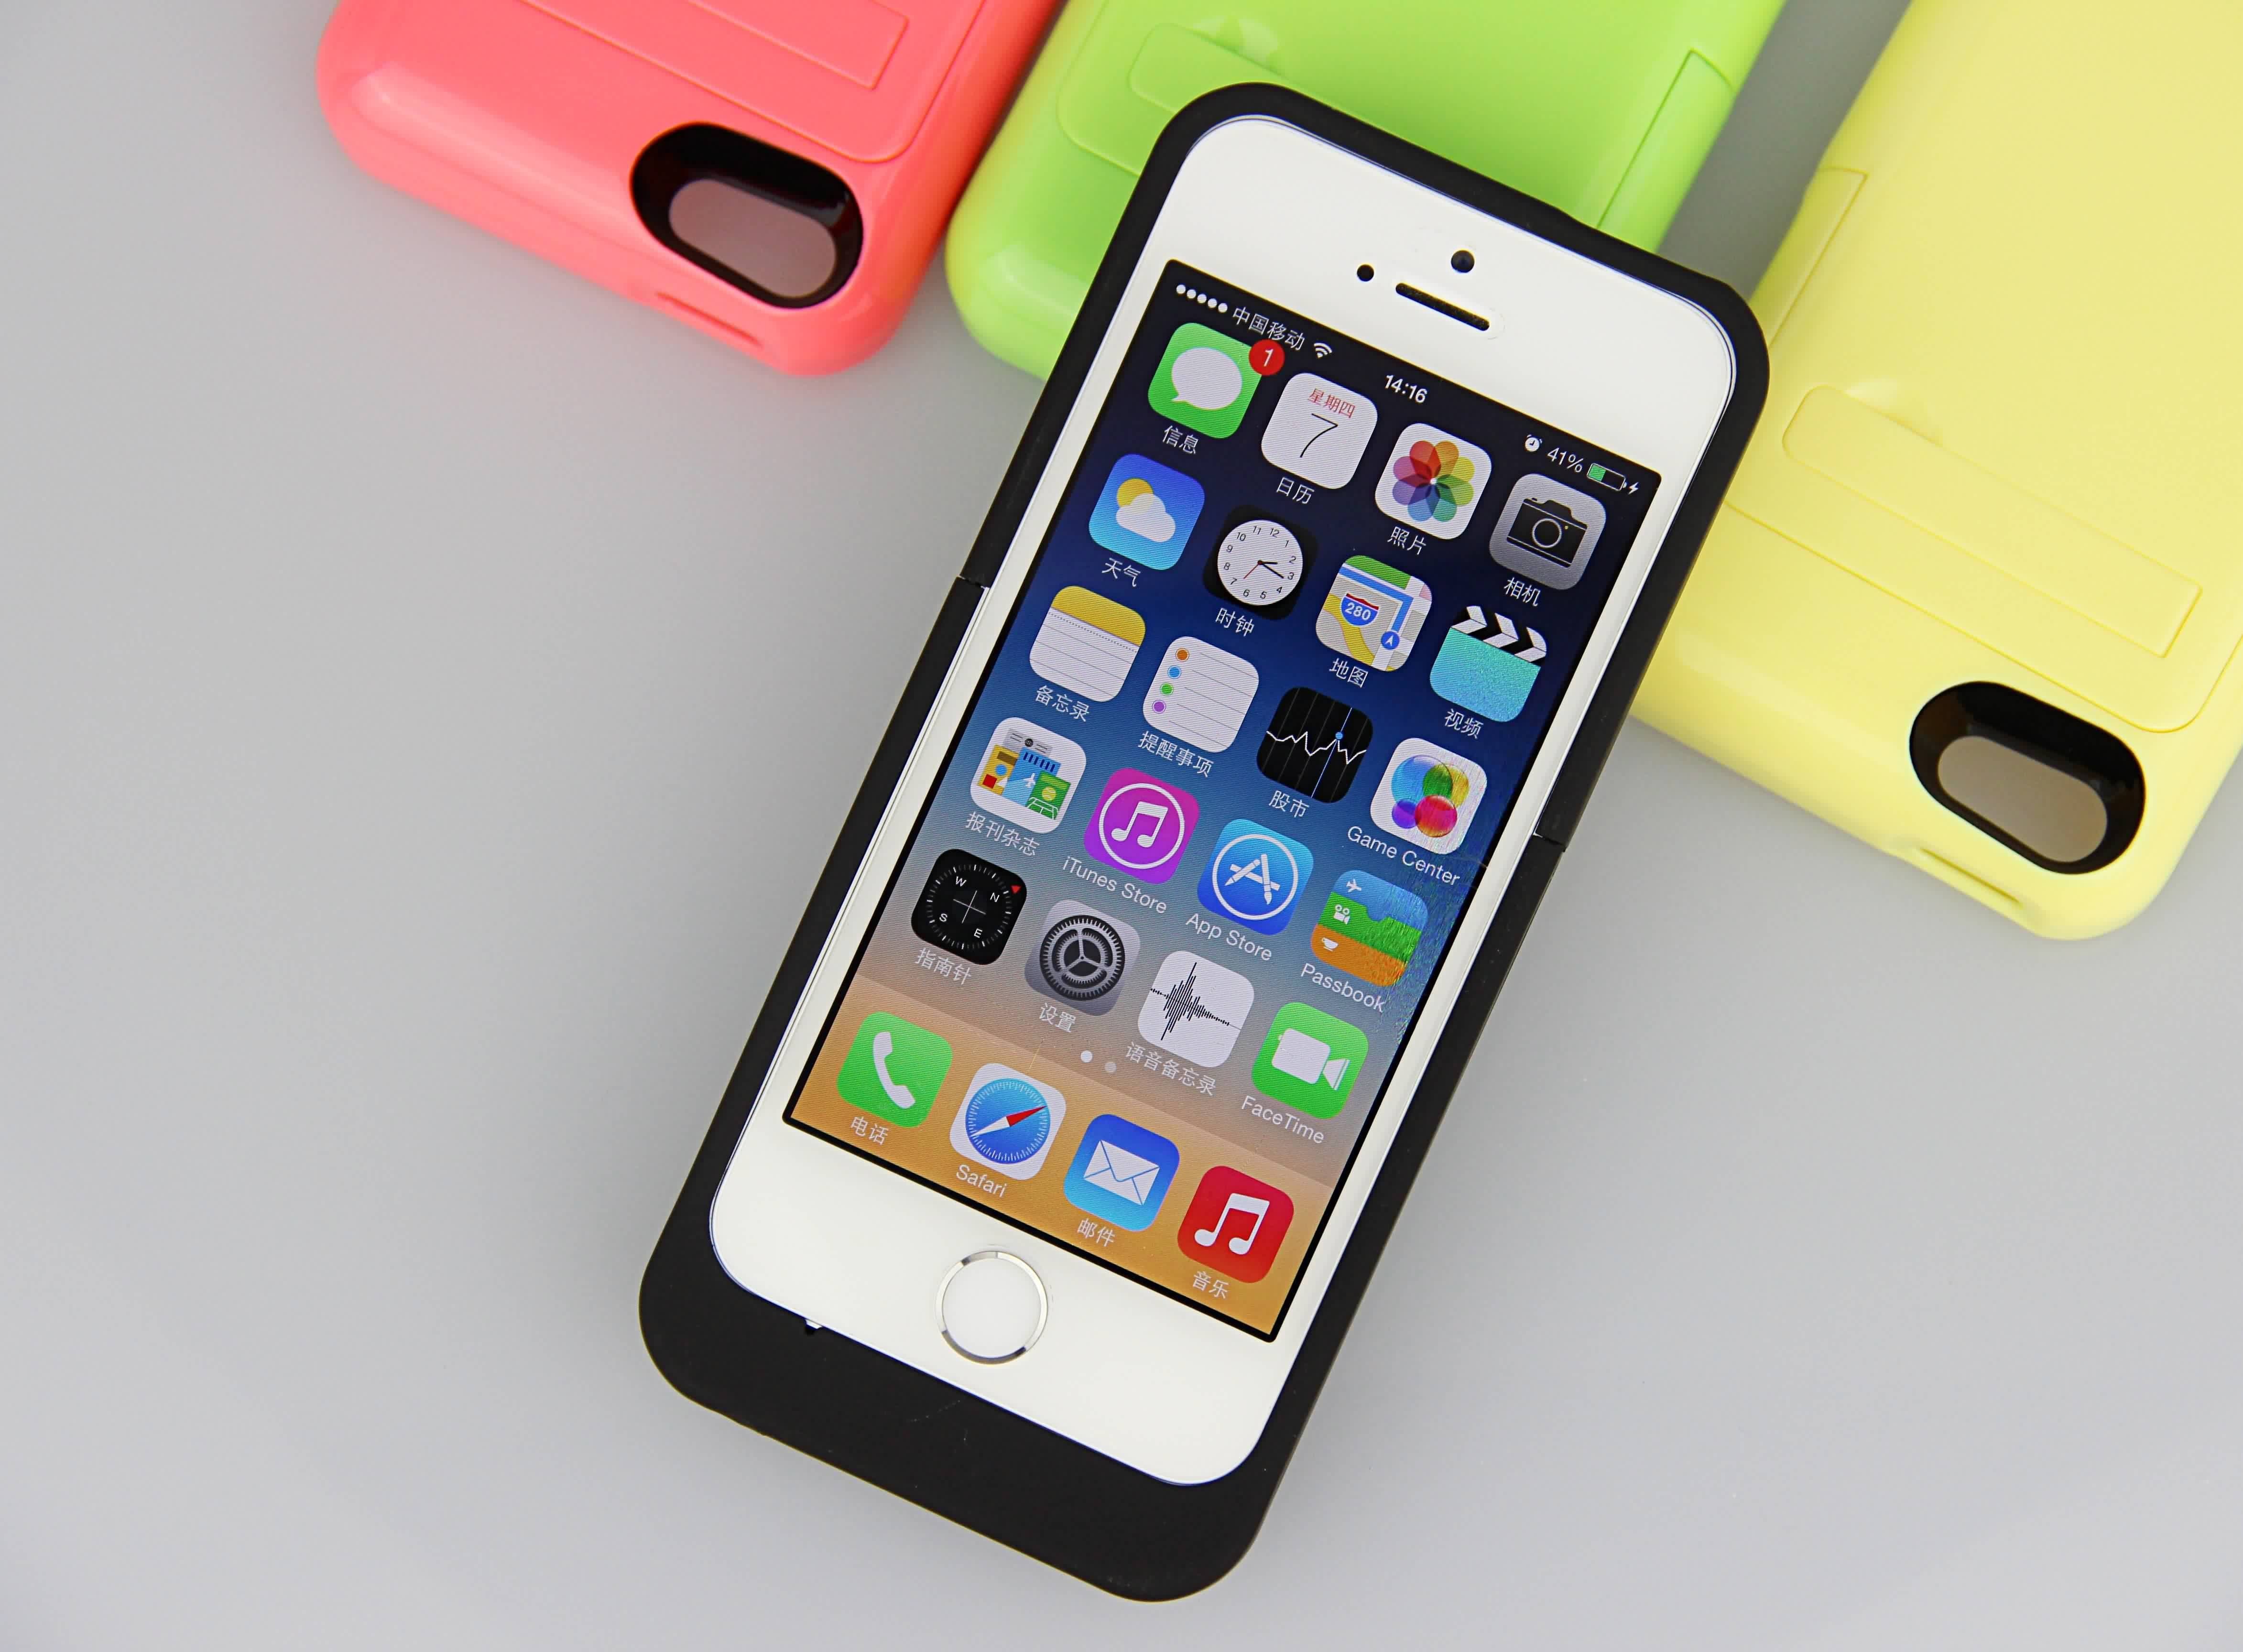 Multi warna Tipis iPhone Battery Case 2200mAh Battery Power Pack untuk iPhone 5